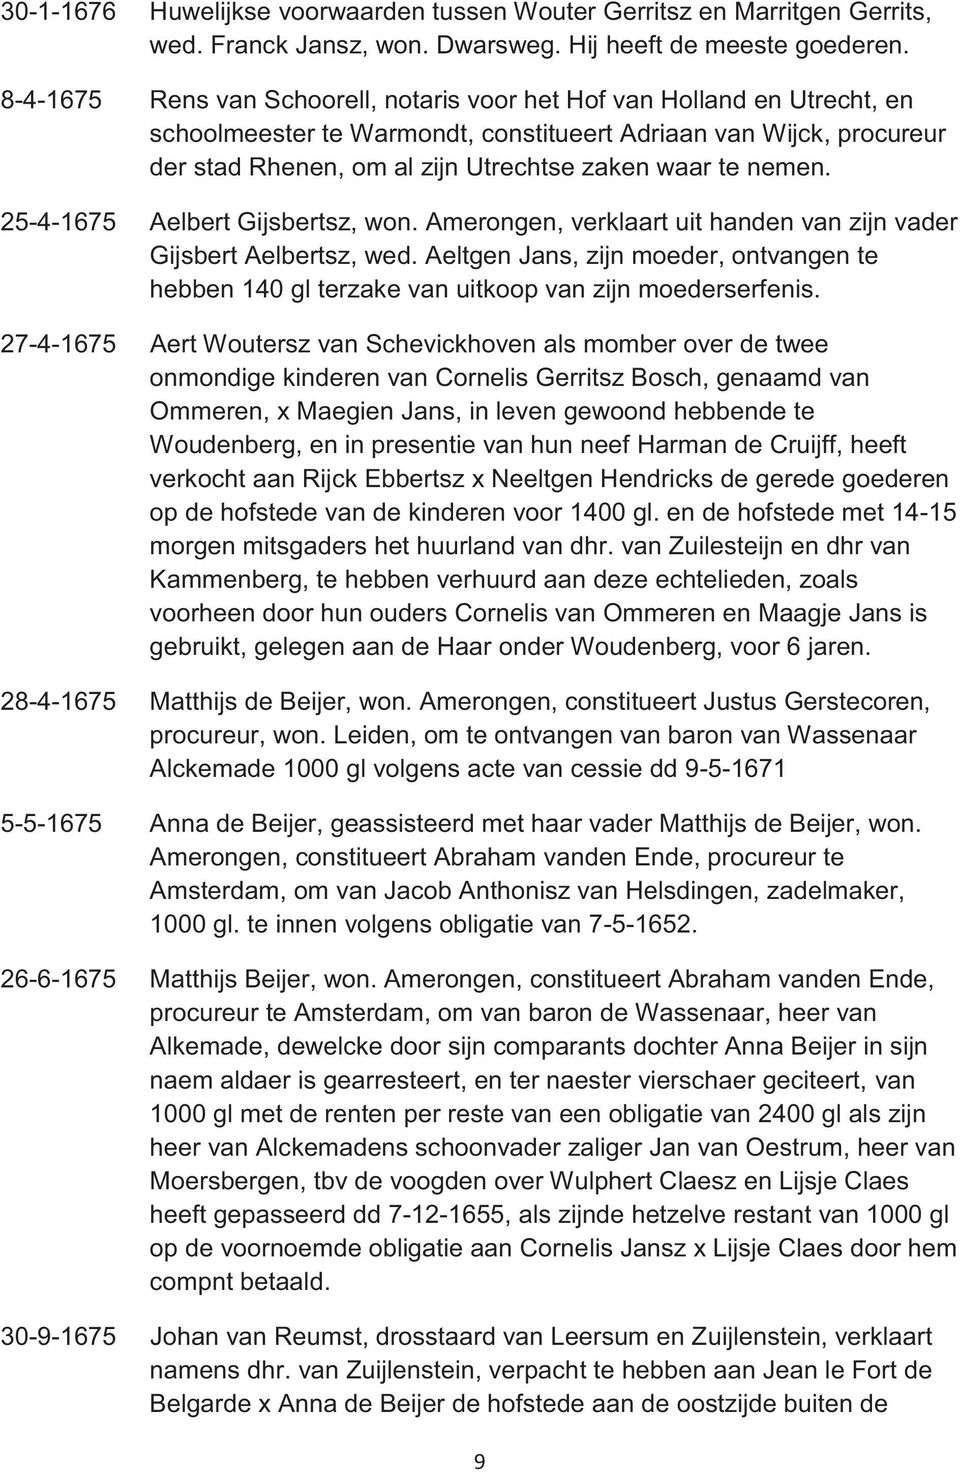 nemen. 25-4-1675 Aelbert Gijsbertsz, won. Amerongen, verklaart uit handen van zijn vader Gijsbert Aelbertsz, wed.